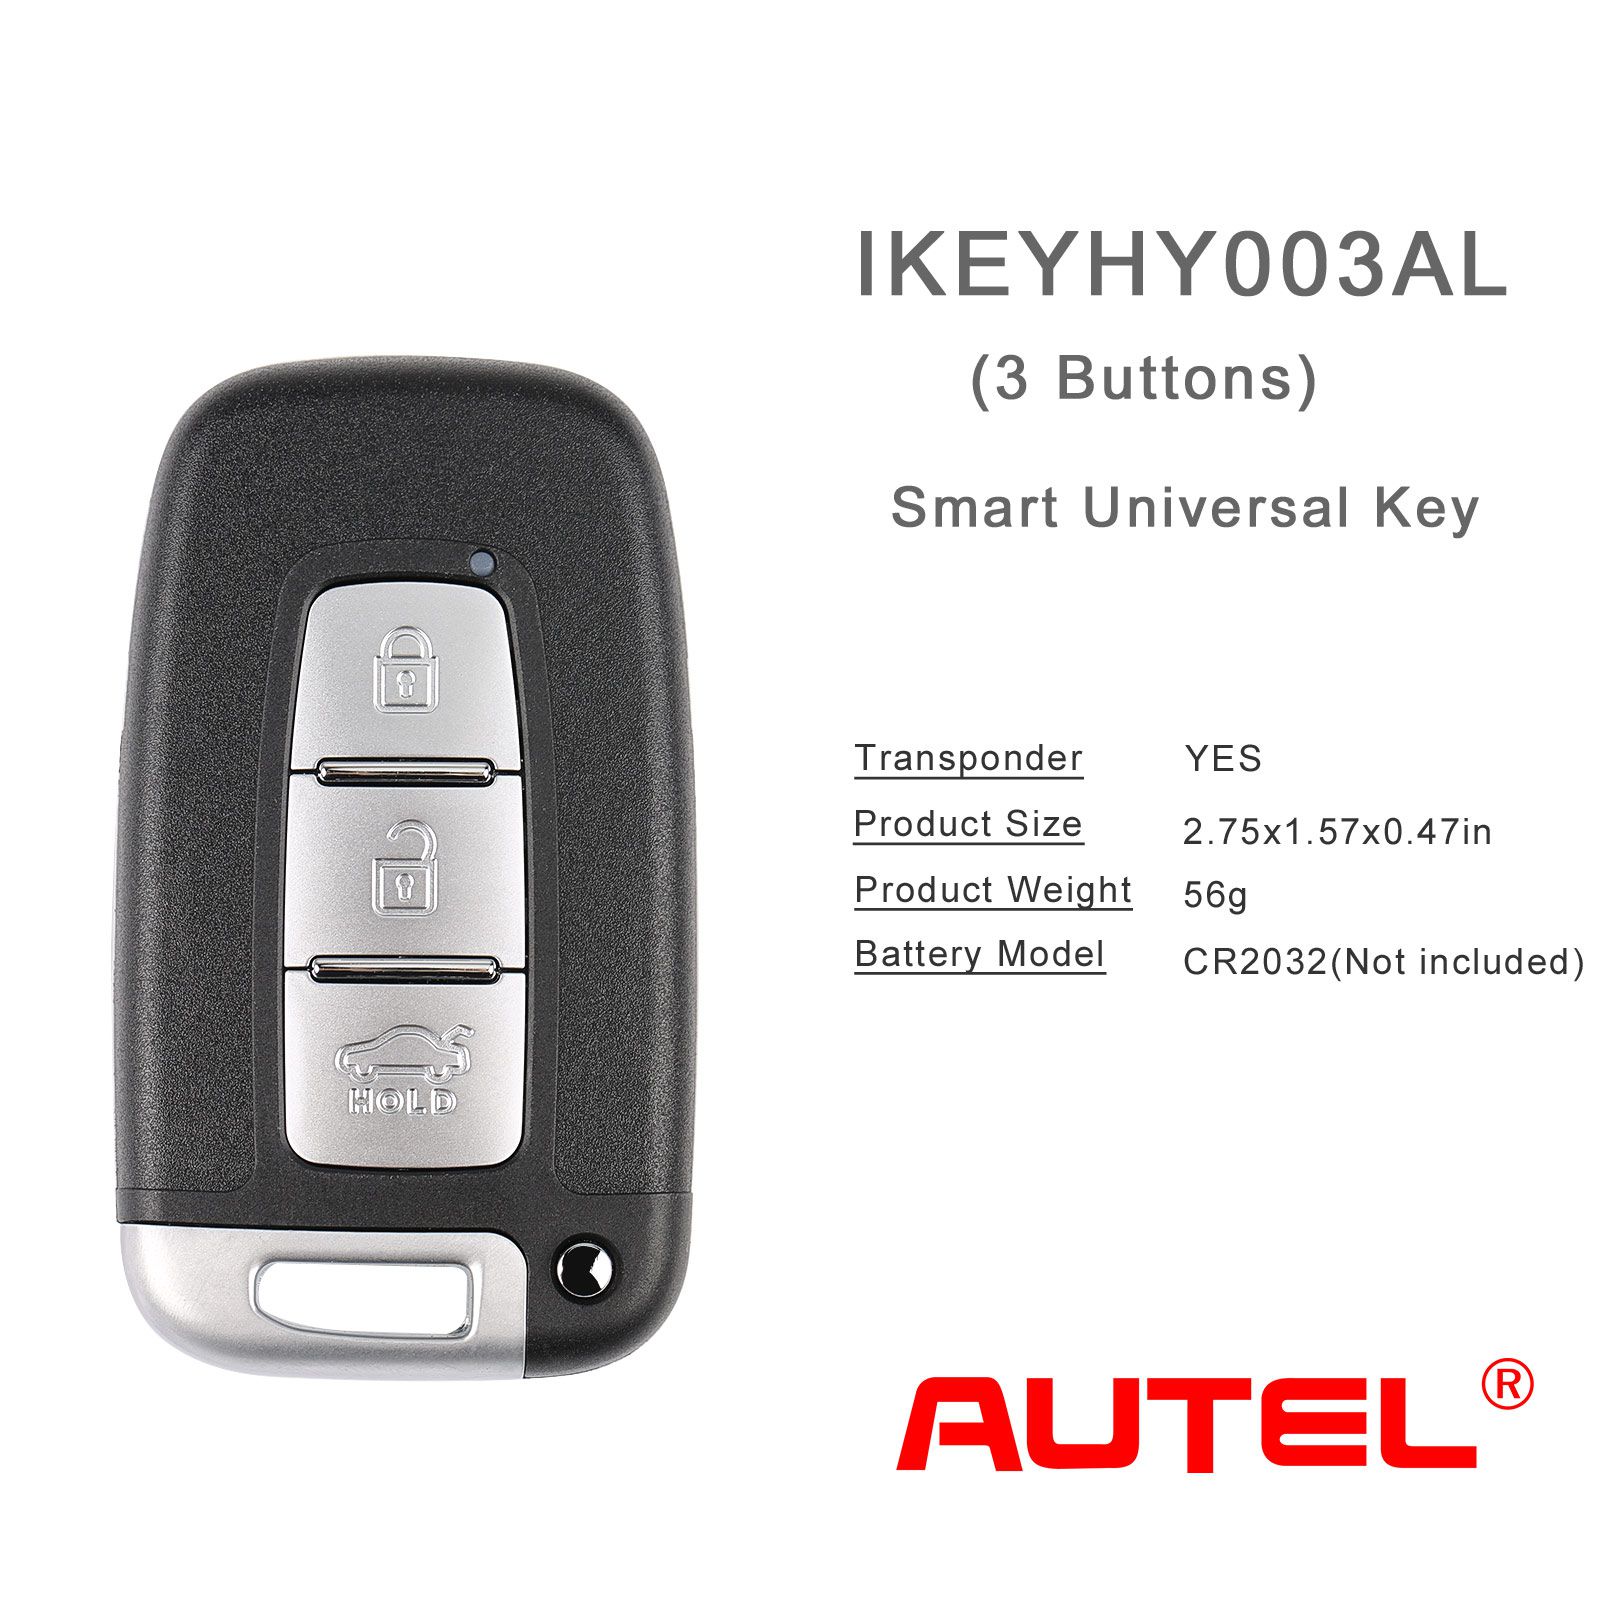 Autel ikeyhy003al Hyundai 3 botones llave inteligente universal 5 piezas / lote